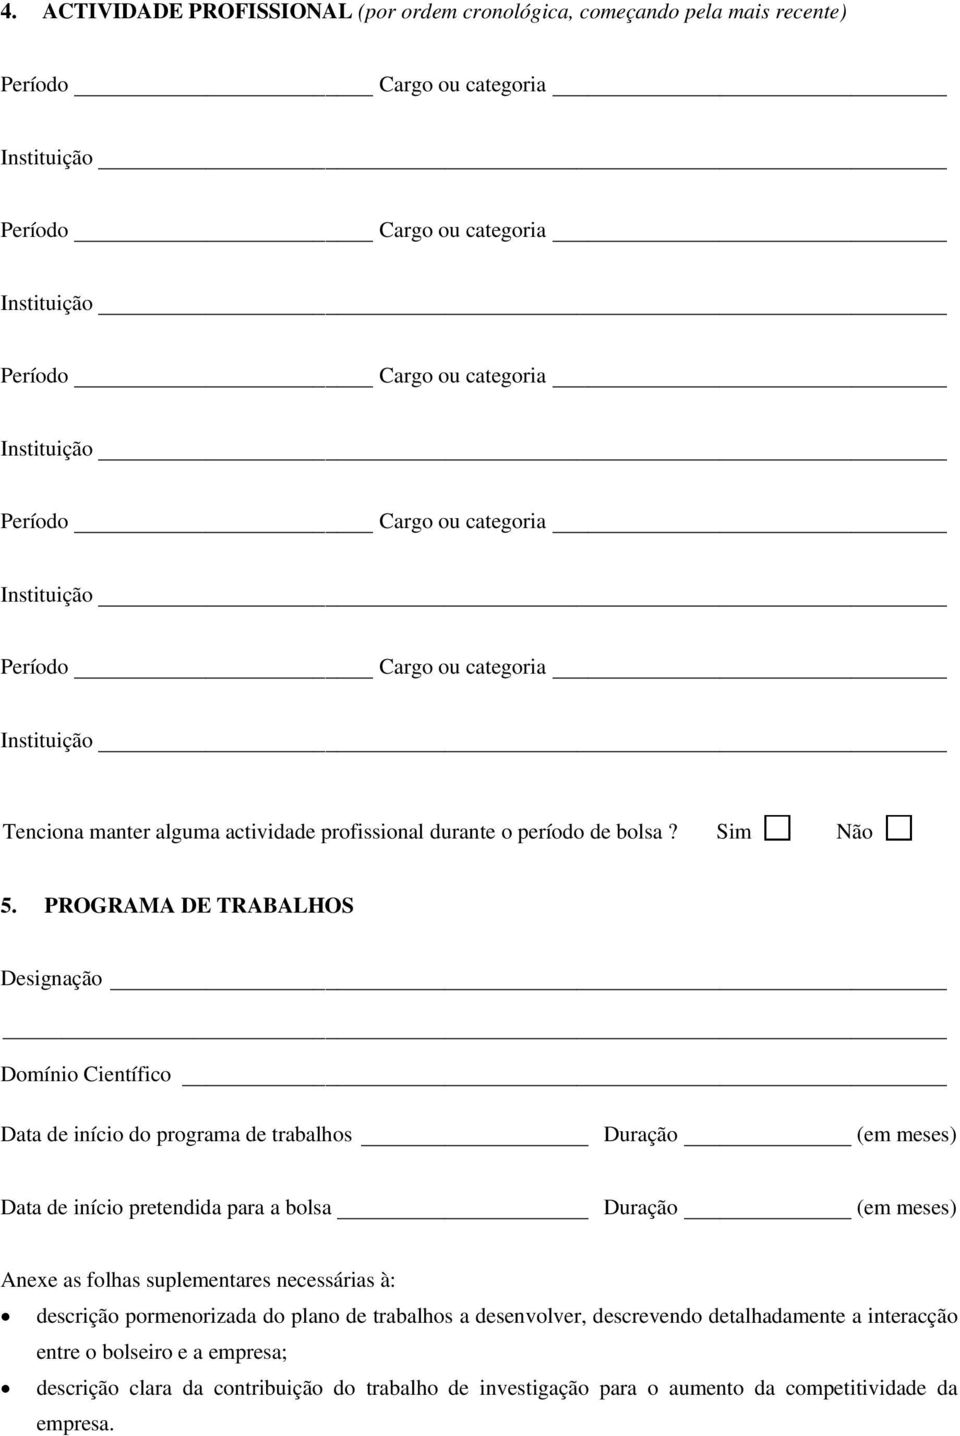 FORMULÁRIO DE CANDIDATURA INDIVIDUAL PARA BOLSAS DE DOUTORAMENTO EM EMPRESAS  (BDE)* - PDF Free Download